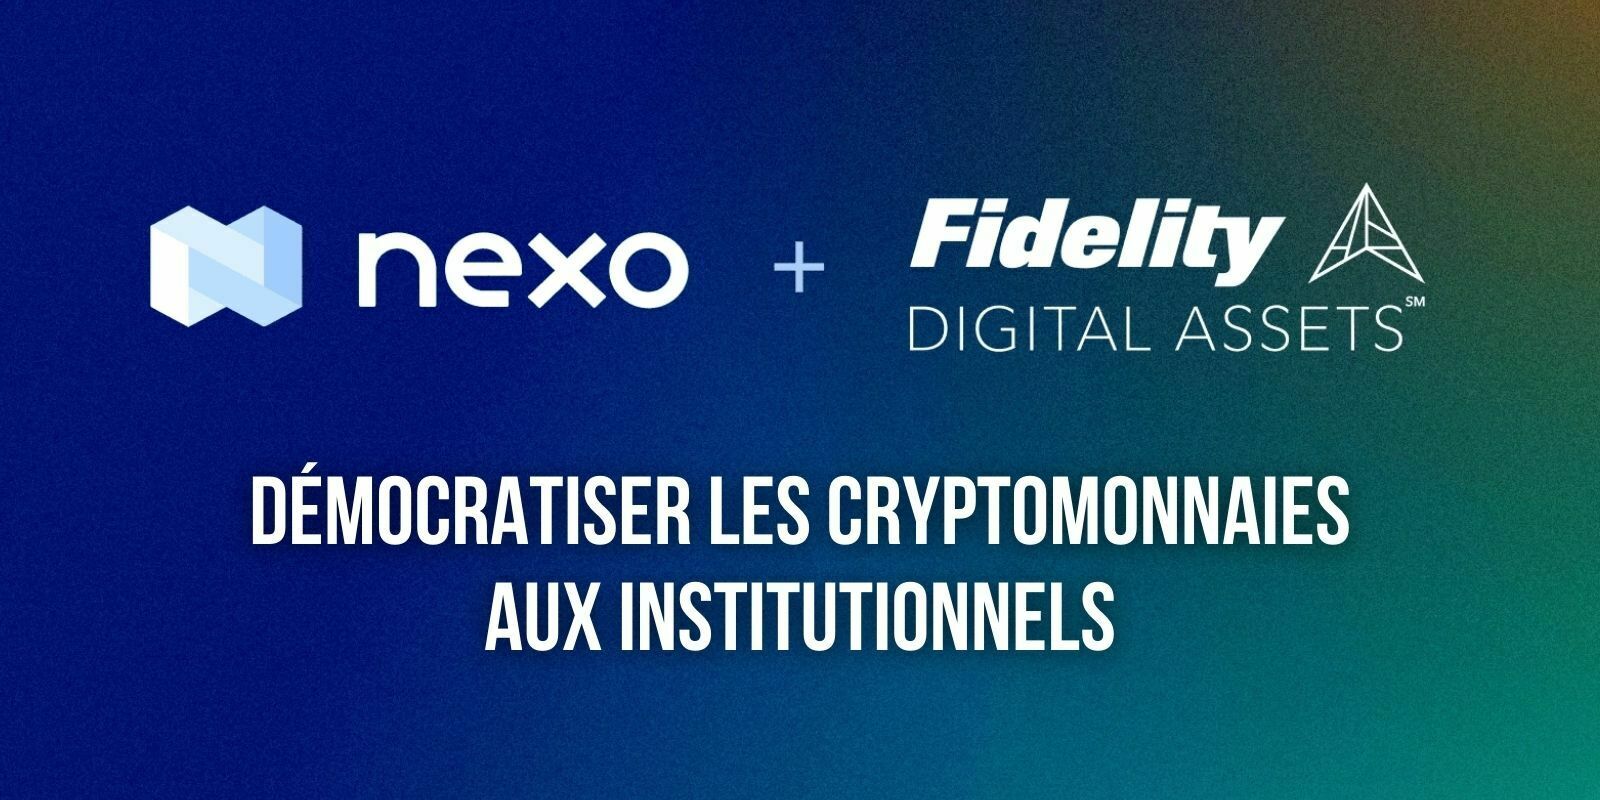 Fidelity et Nexo s'associent pour proposer des services de cryptomonnaies aux institutionnels